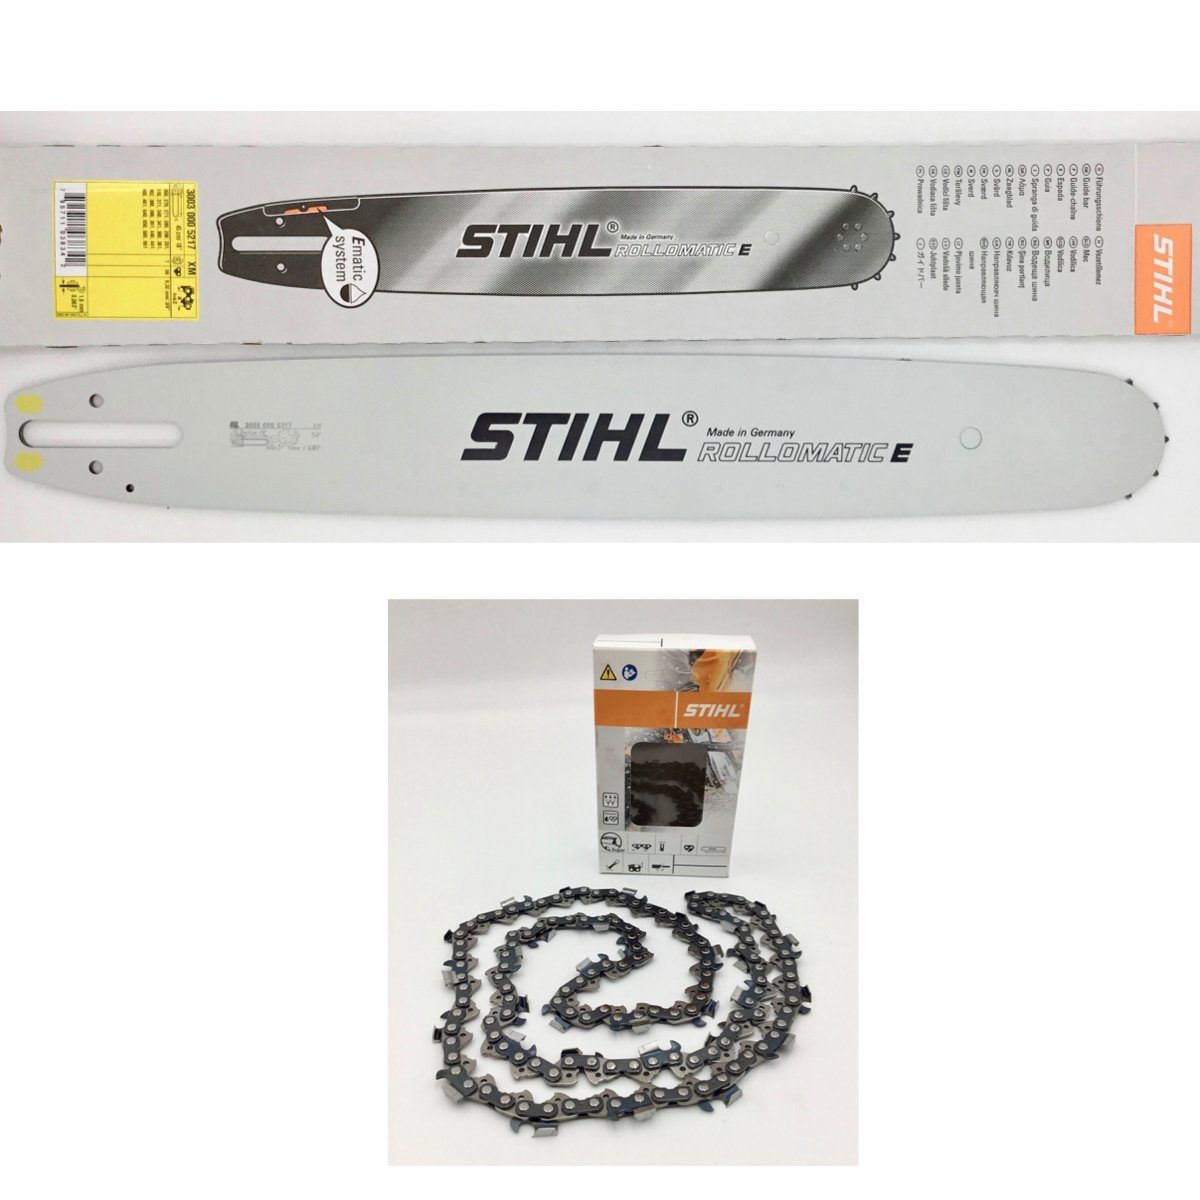 Stihl Light 06 30030005217 Führungsschiene 1,6mm 3/8 45cm / 18